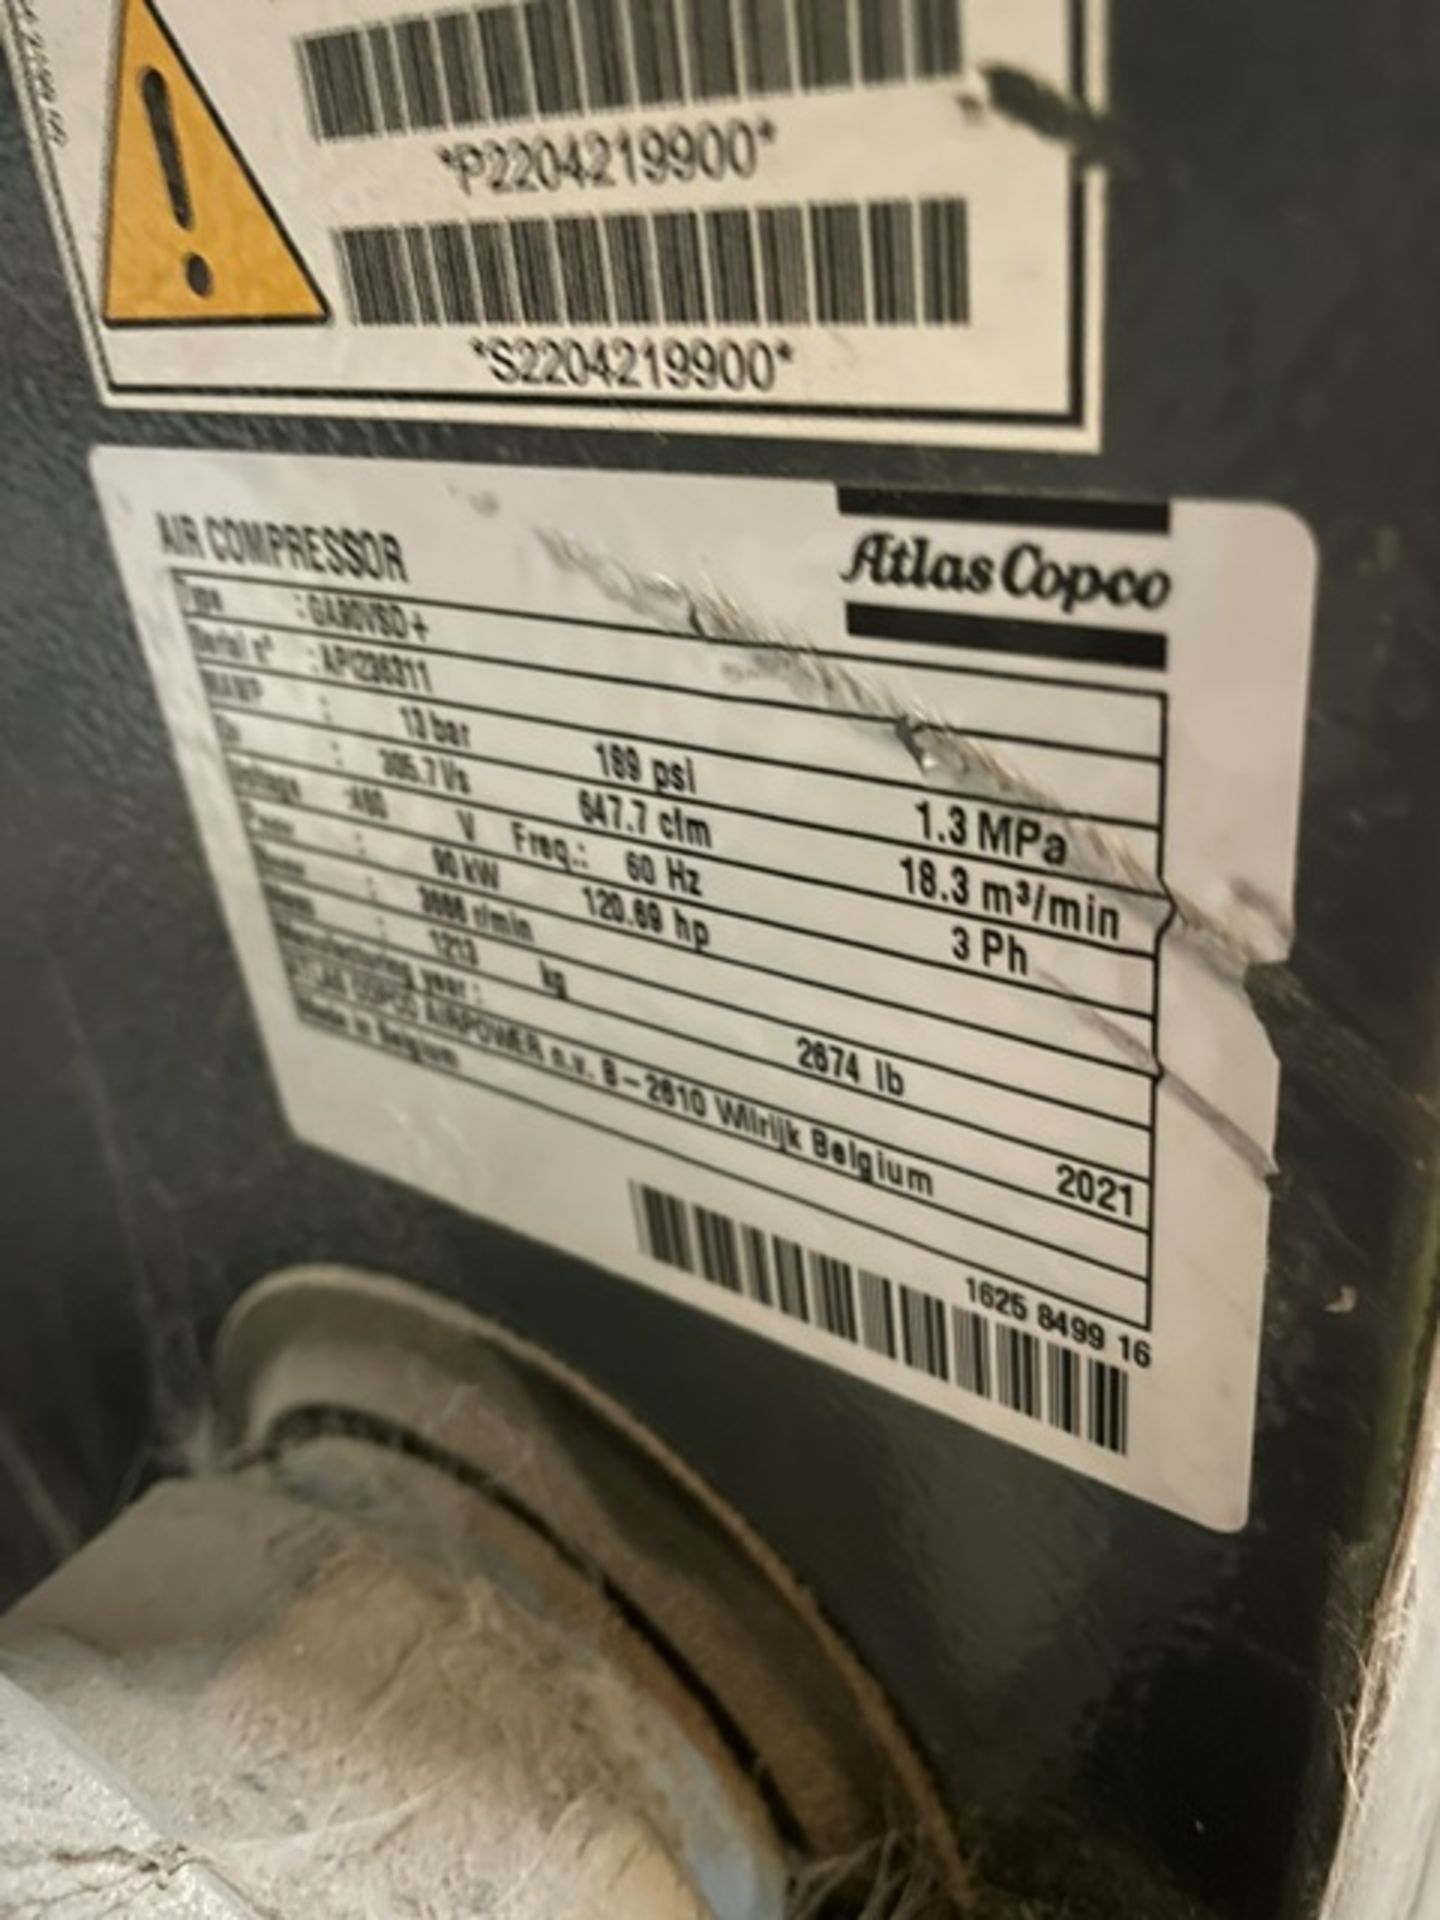 Atlas Copco #GA90VSD Rotary Screw Air Compressor, Includes Air Receptacle 7 Atlas Copco Dryer and - Image 2 of 3